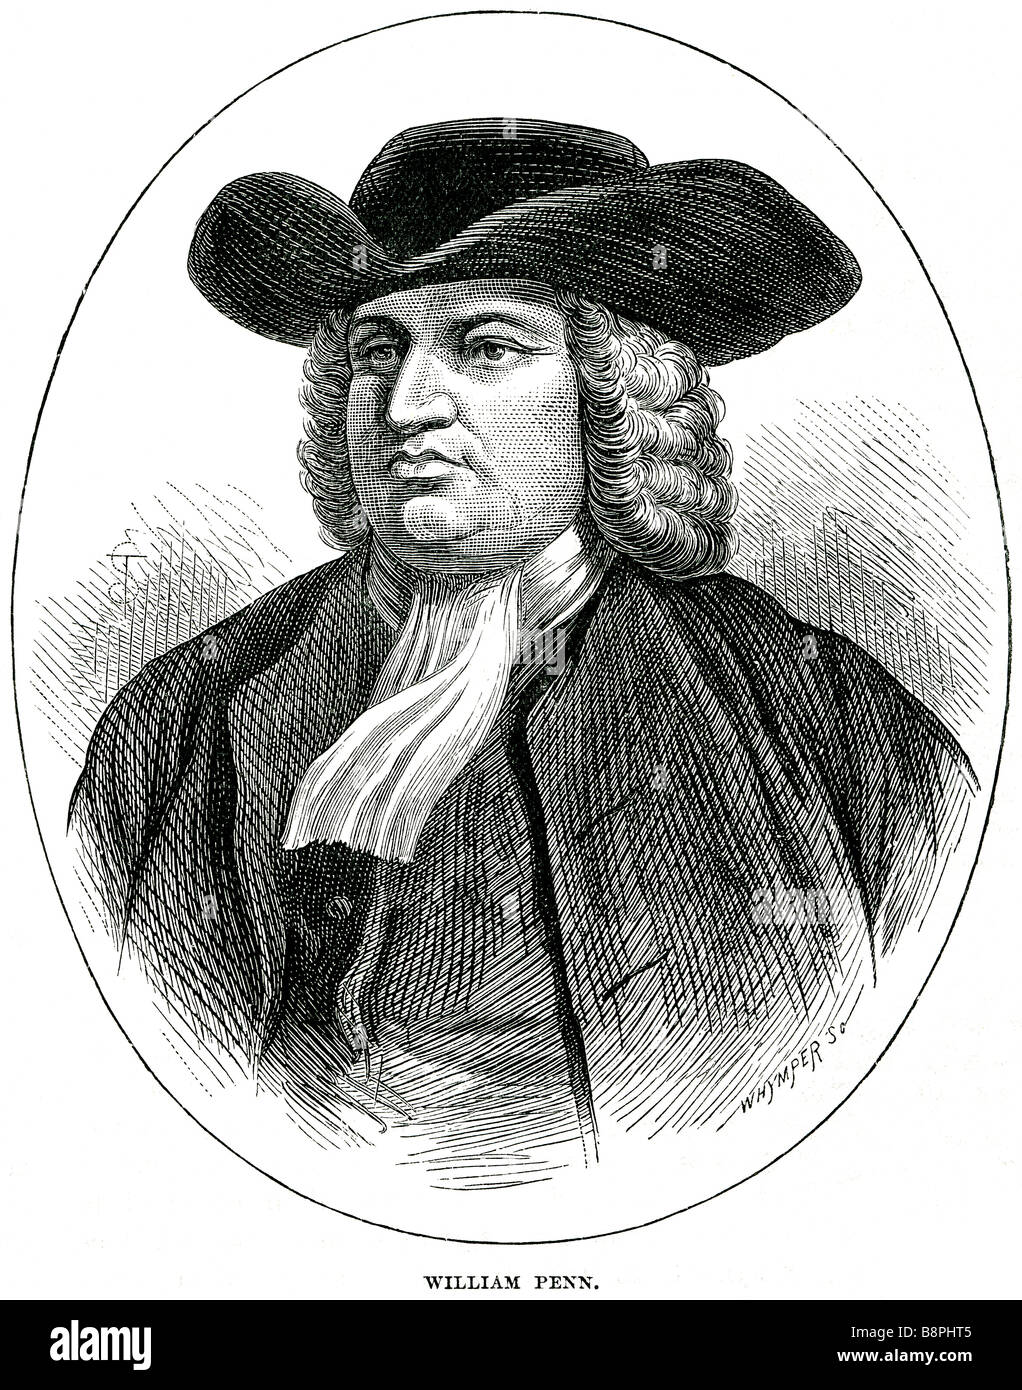 William Penn (Ottobre 14, 1644 - Luglio 30, 1718), è stato il fondatore e titolare assoluto' della provincia di Pennsylvania, Engli Foto Stock